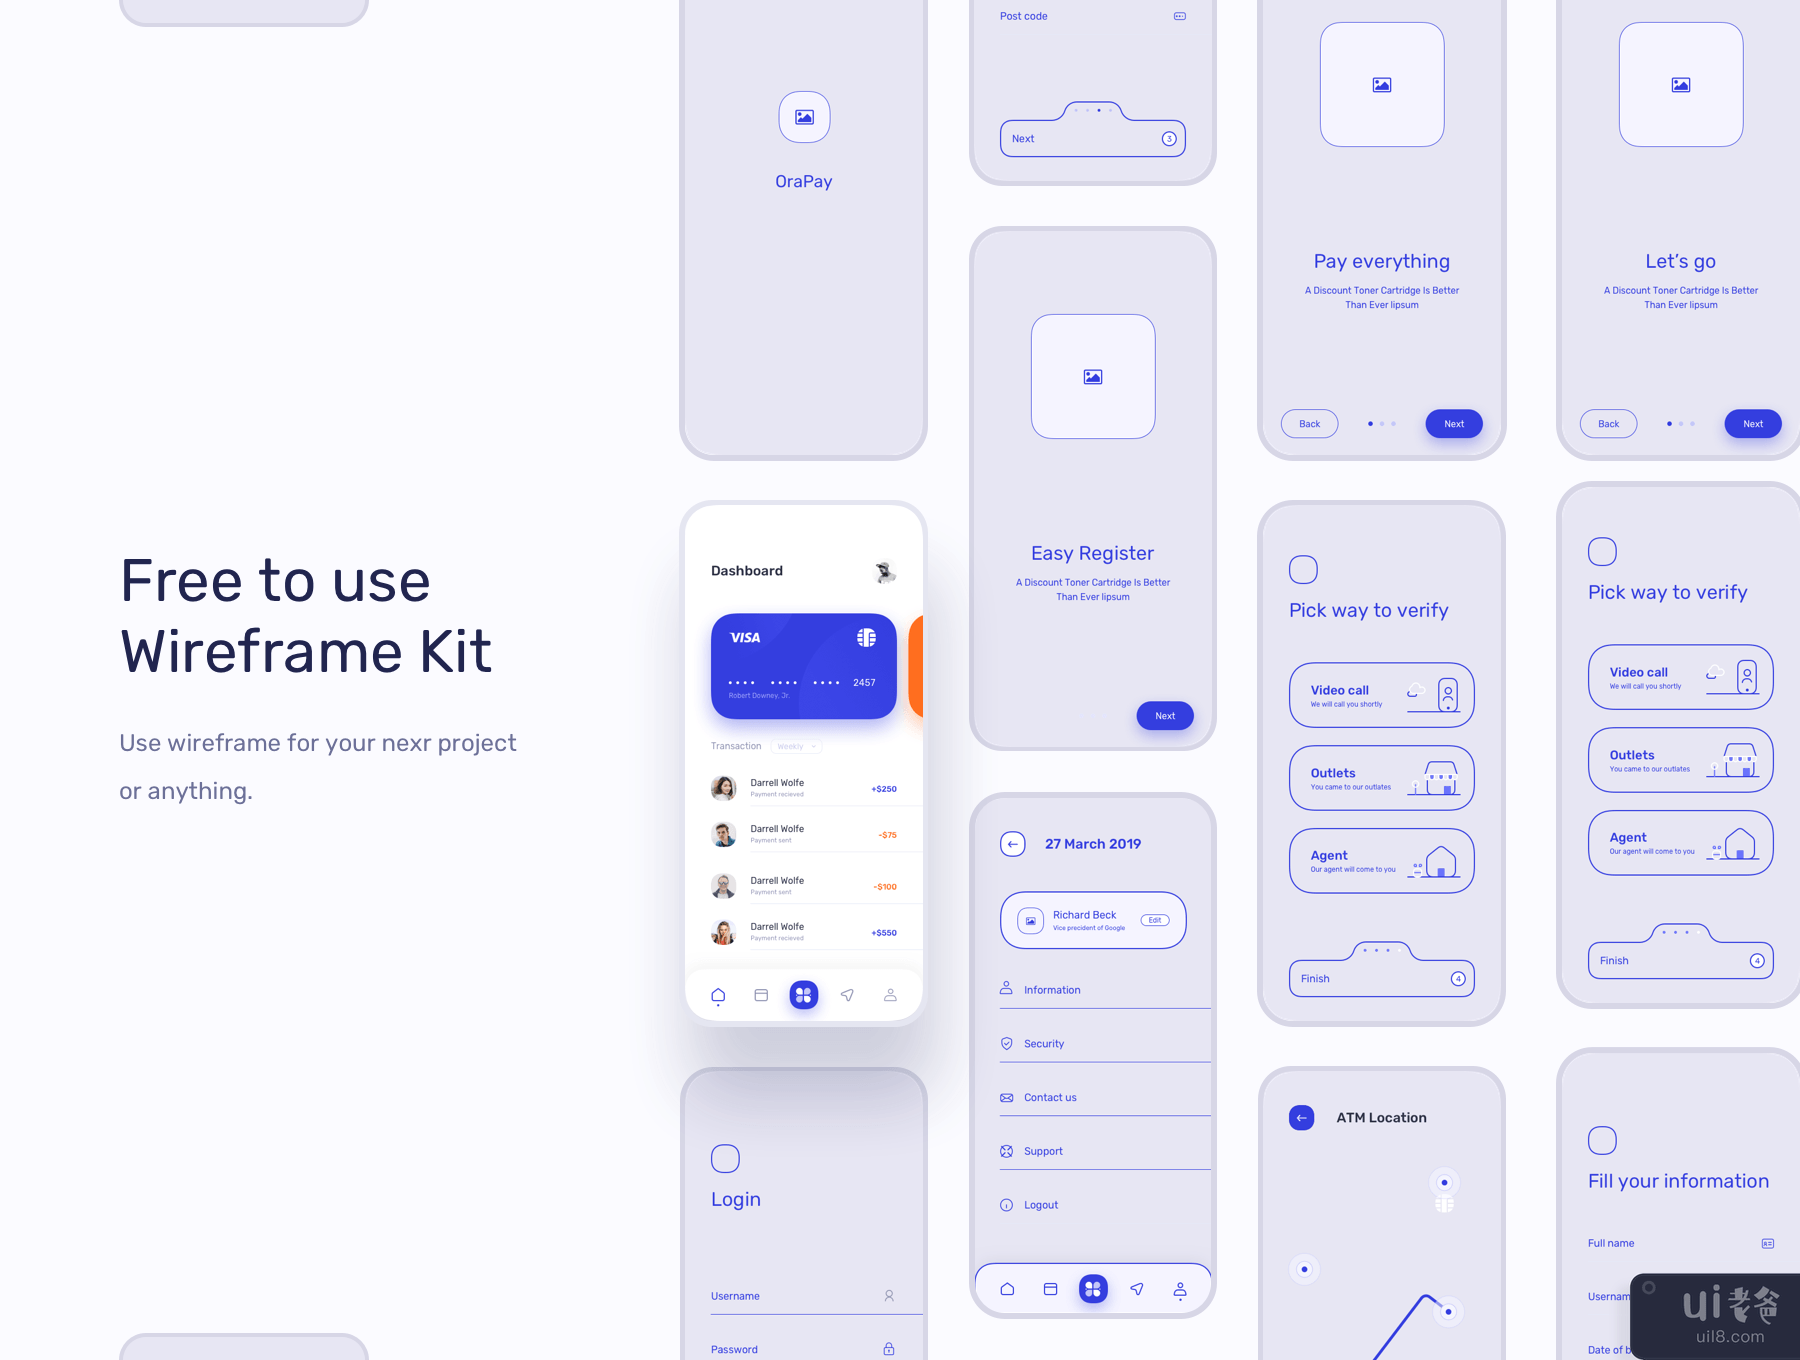 金融 UI 套件 - 银行应用程序(Financial UI Kits - Bank App)插图